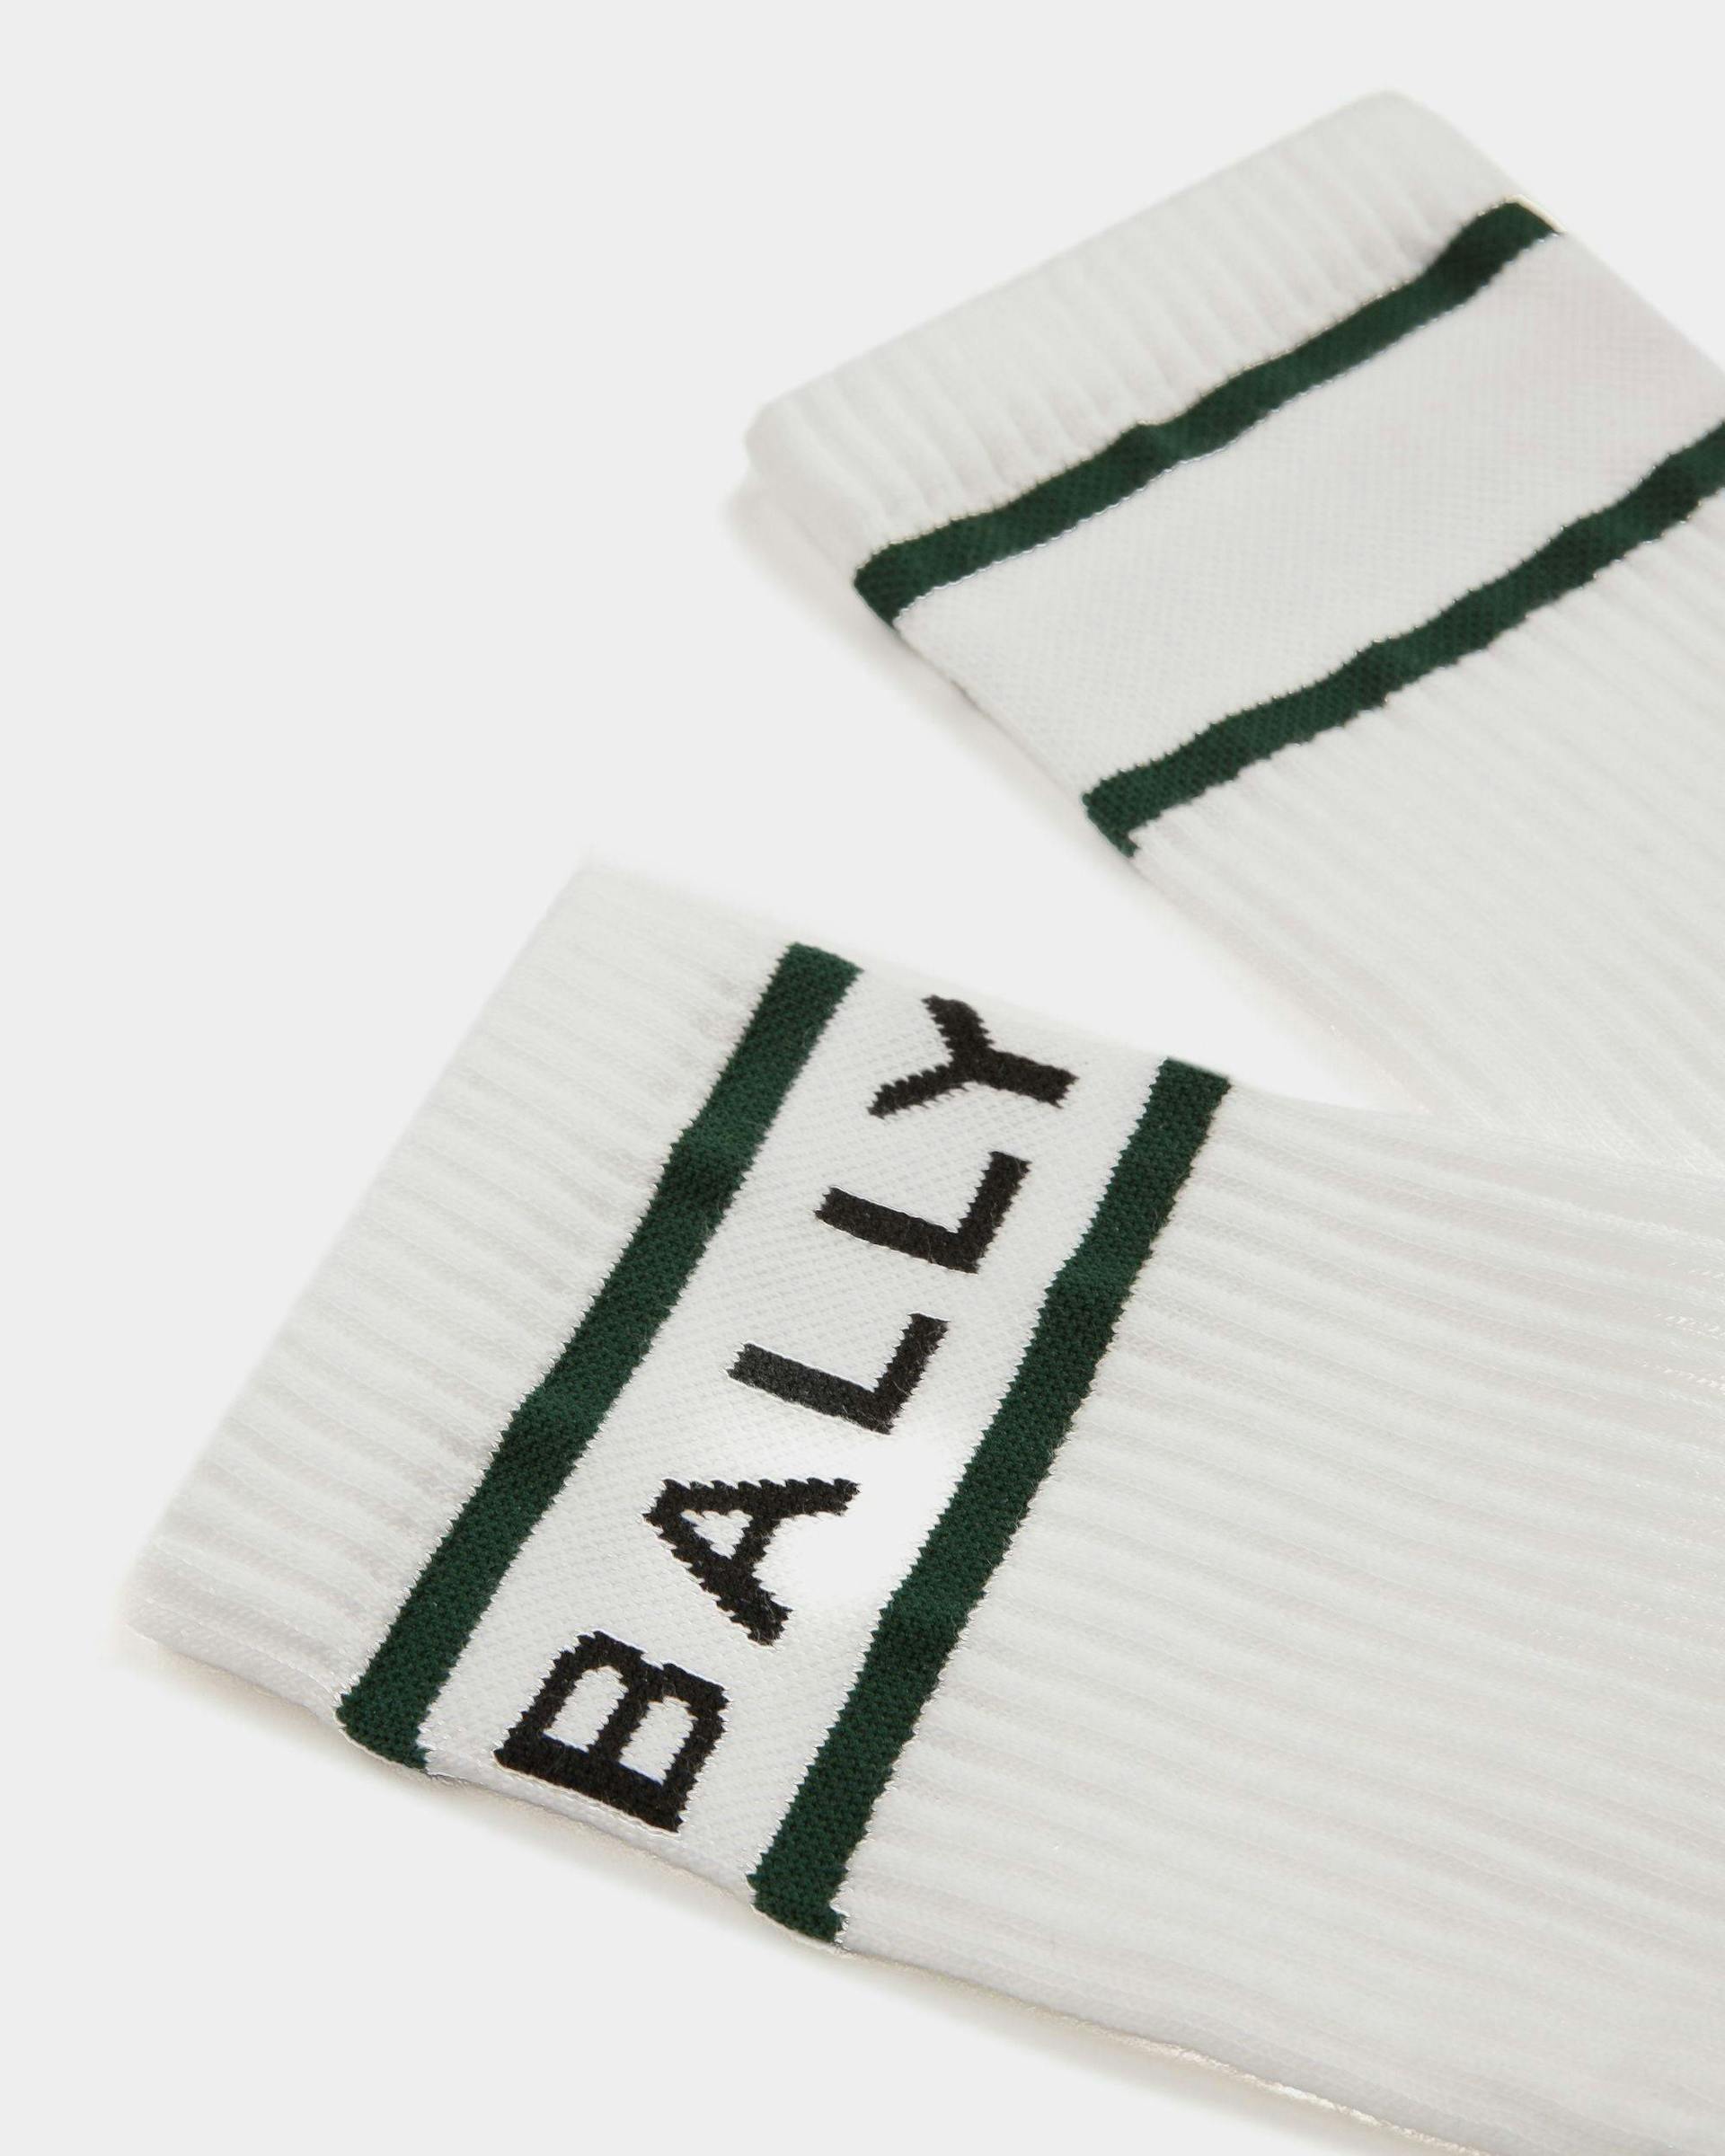 Bally Stripe Socks In White And Green - Men's - Bally - 02